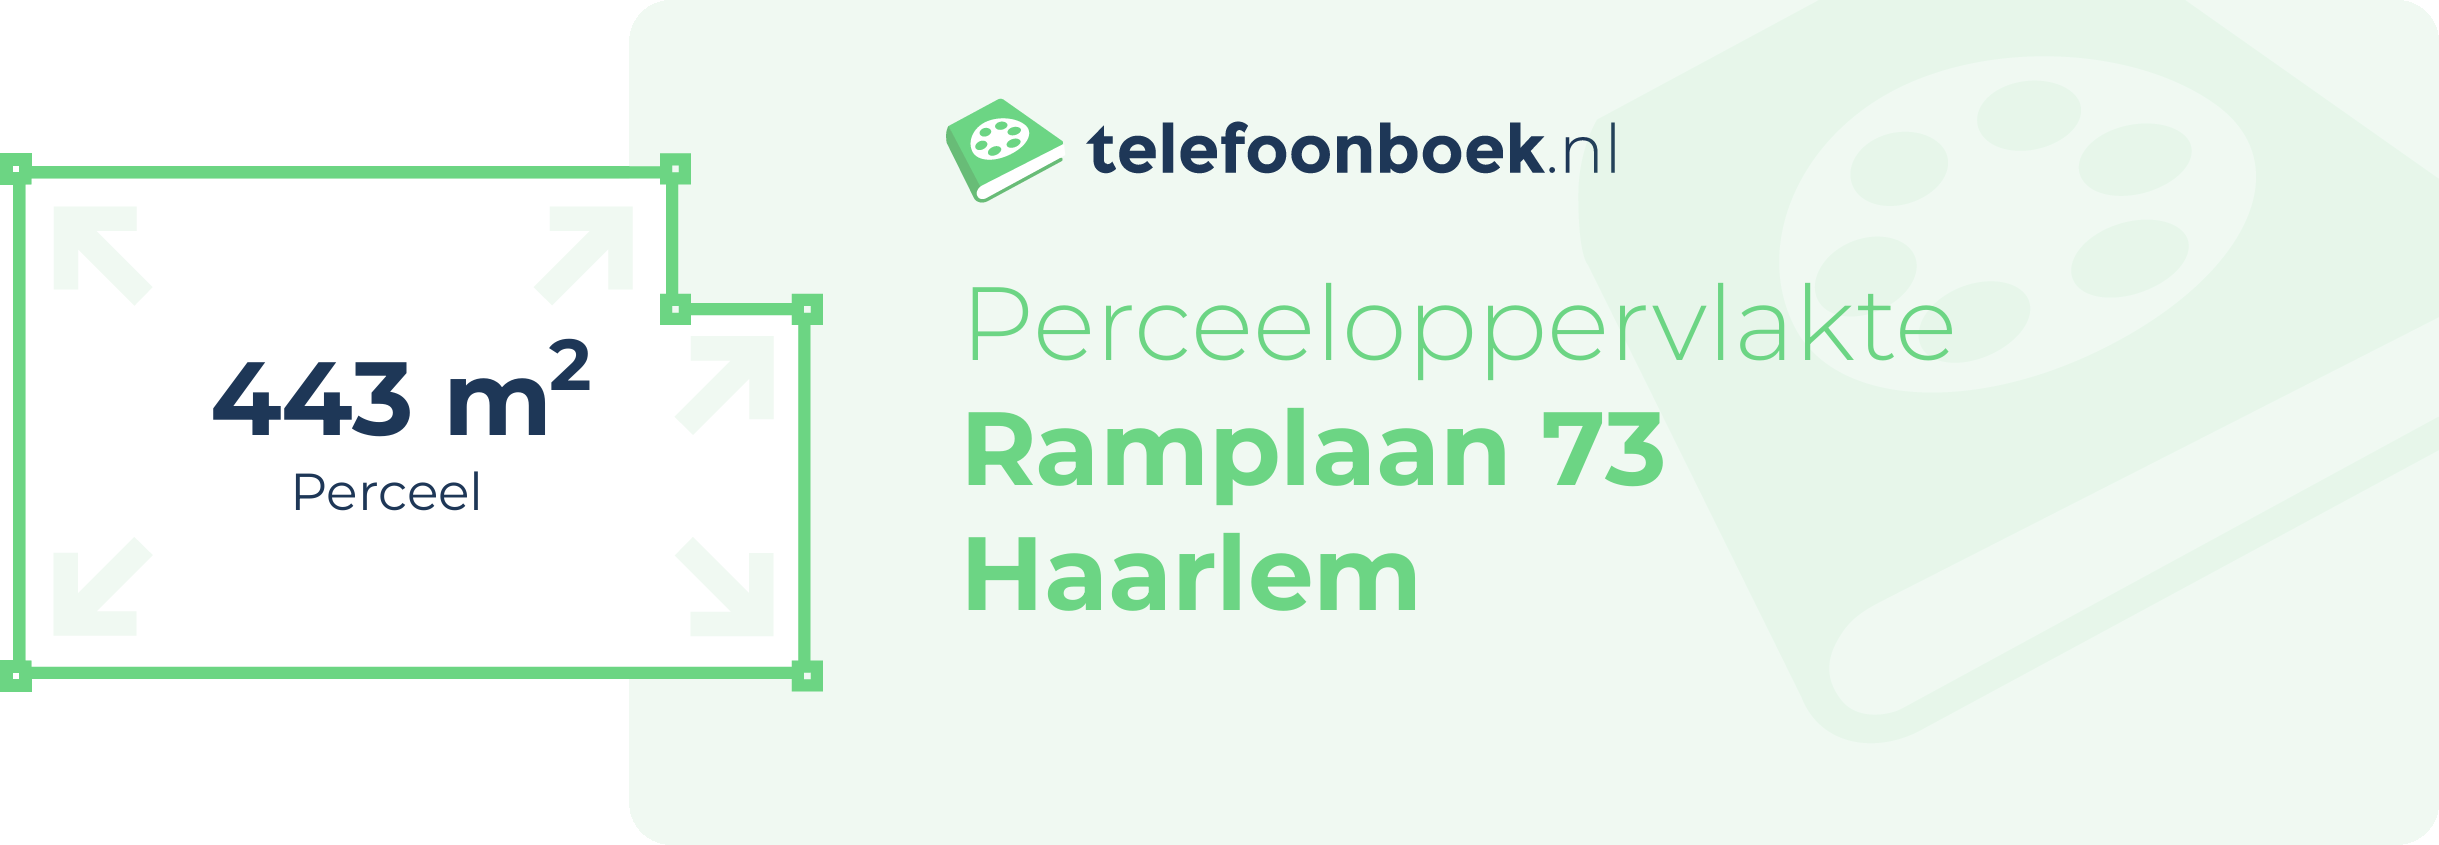 Perceeloppervlakte Ramplaan 73 Haarlem